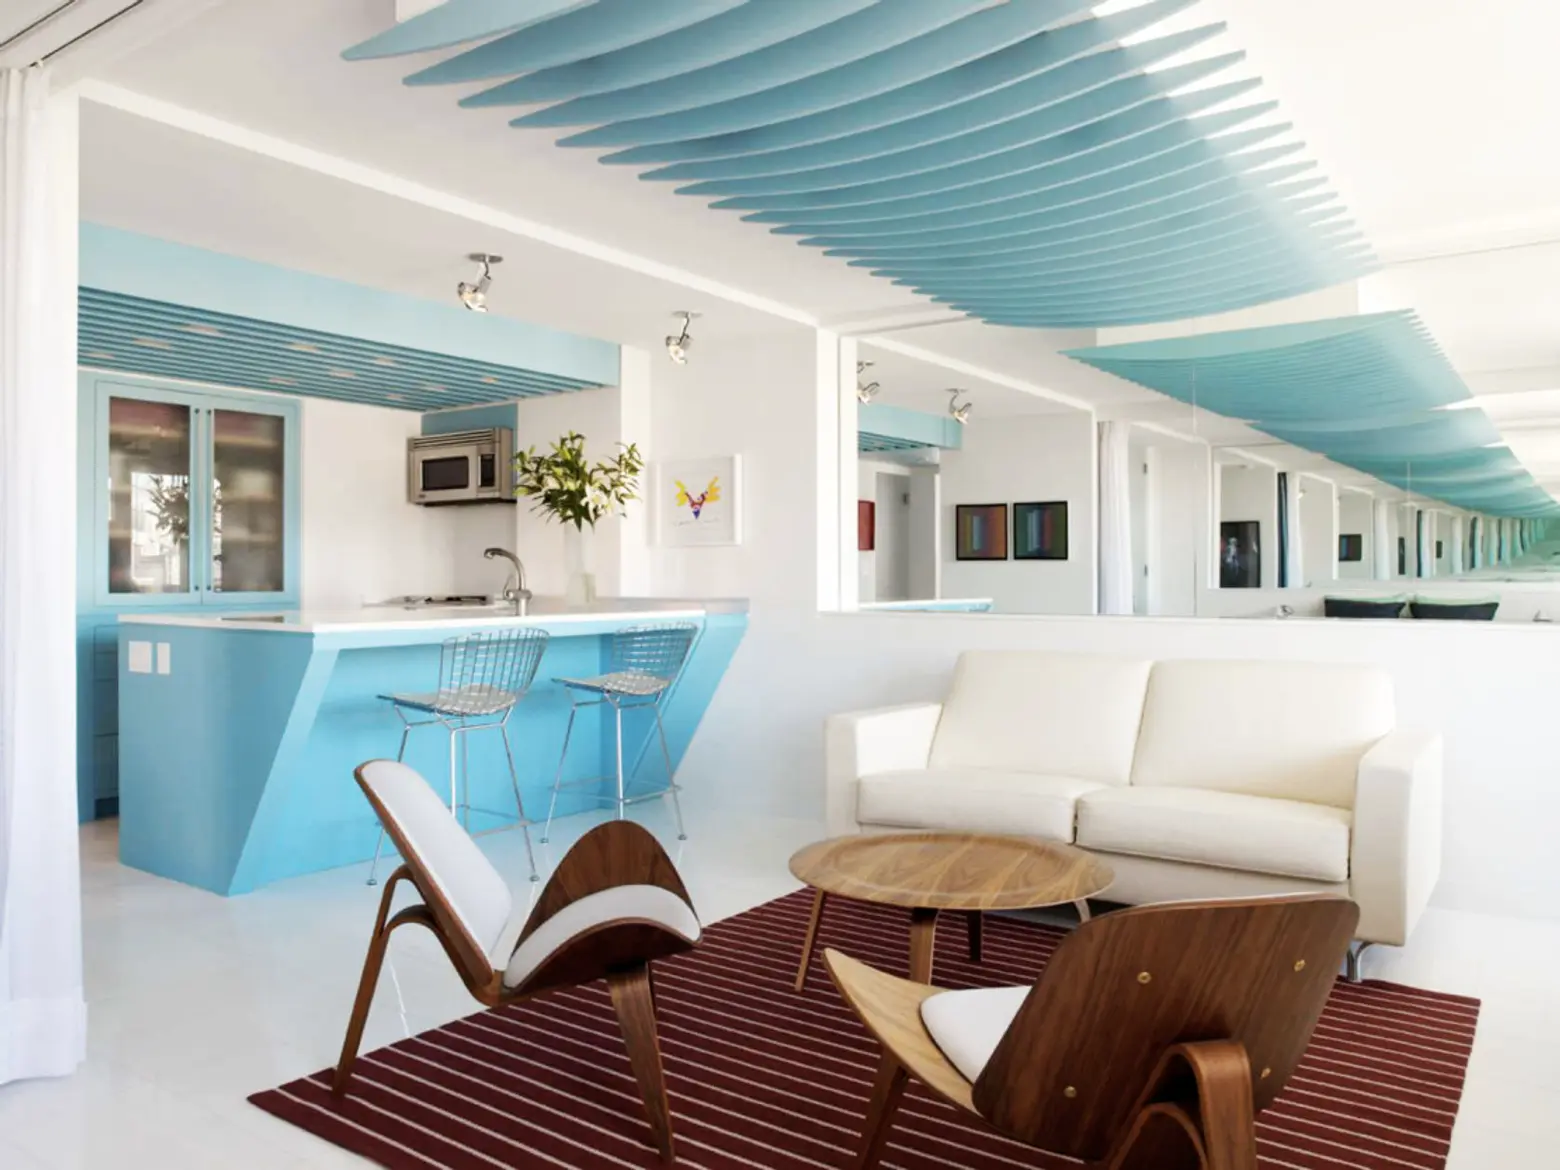 Michael Rubin Architects, chelsea pied a terre, chelsea interior design, mirrors in interior design